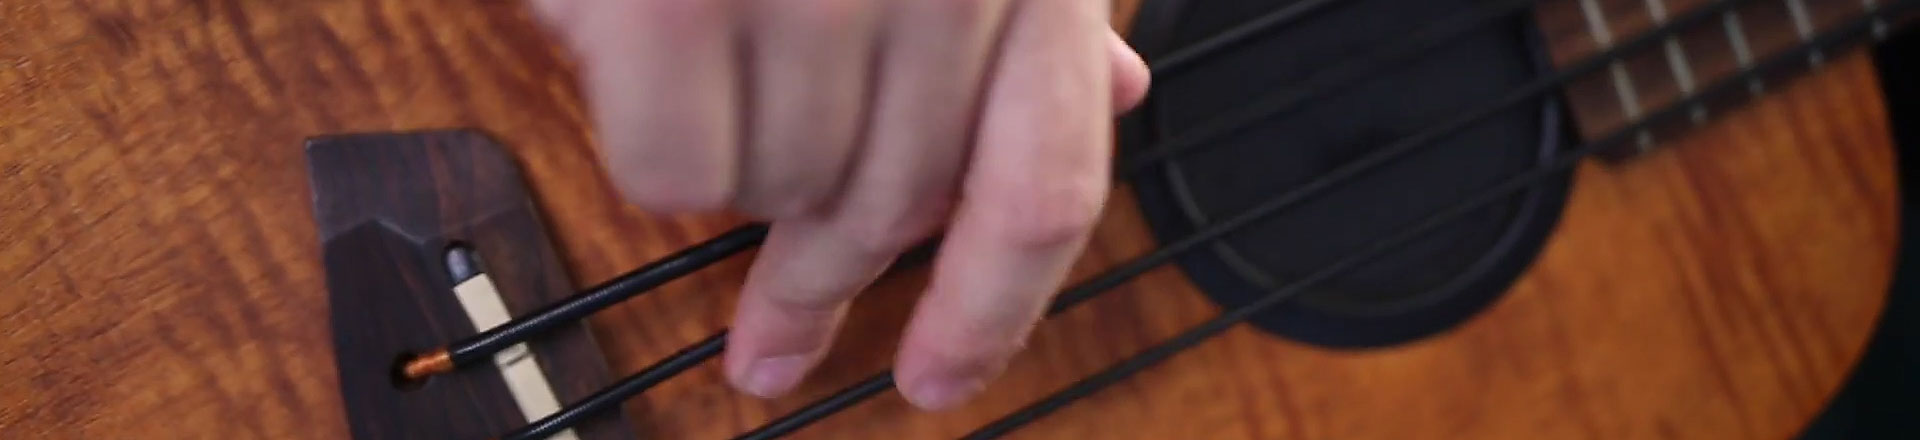 Gallistrings przedstawia struny do basowego ukulele